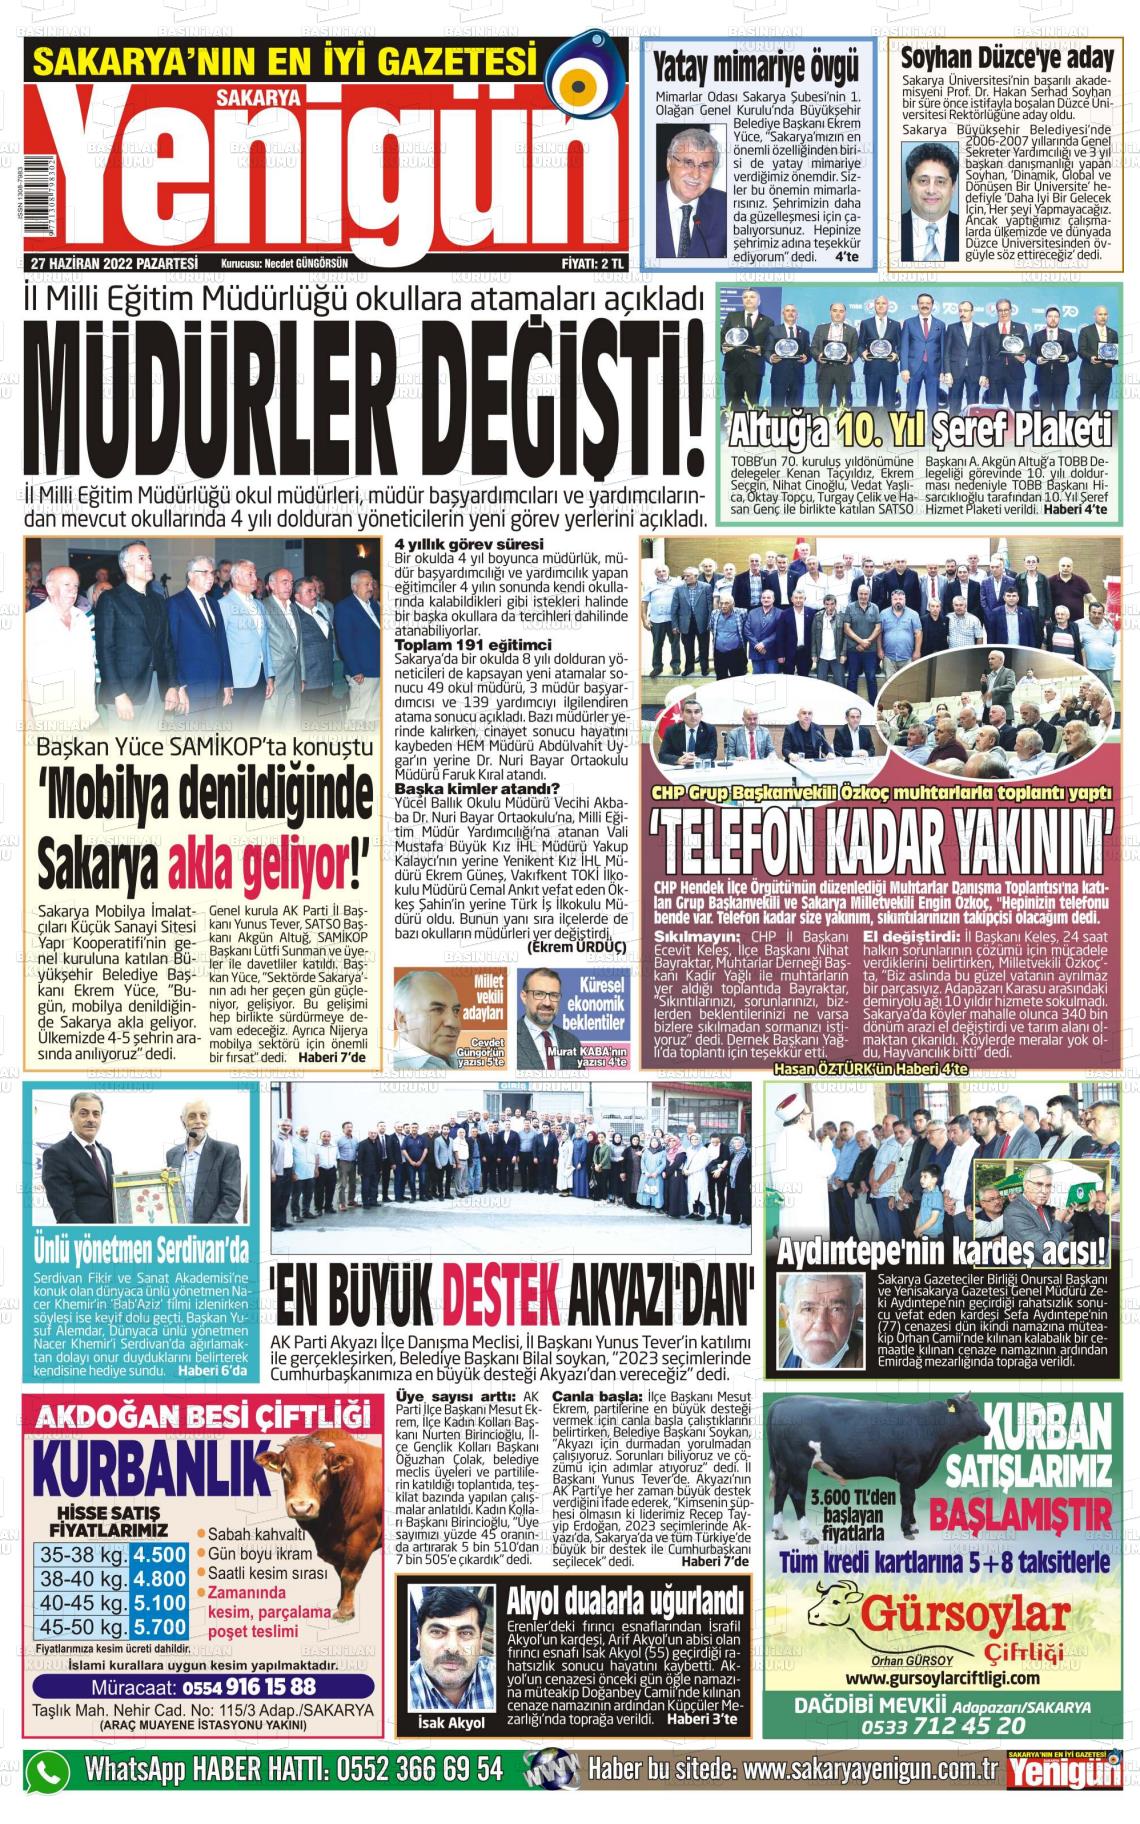 27 Haziran 2022 Sakarya Yenigün Gazete Manşeti